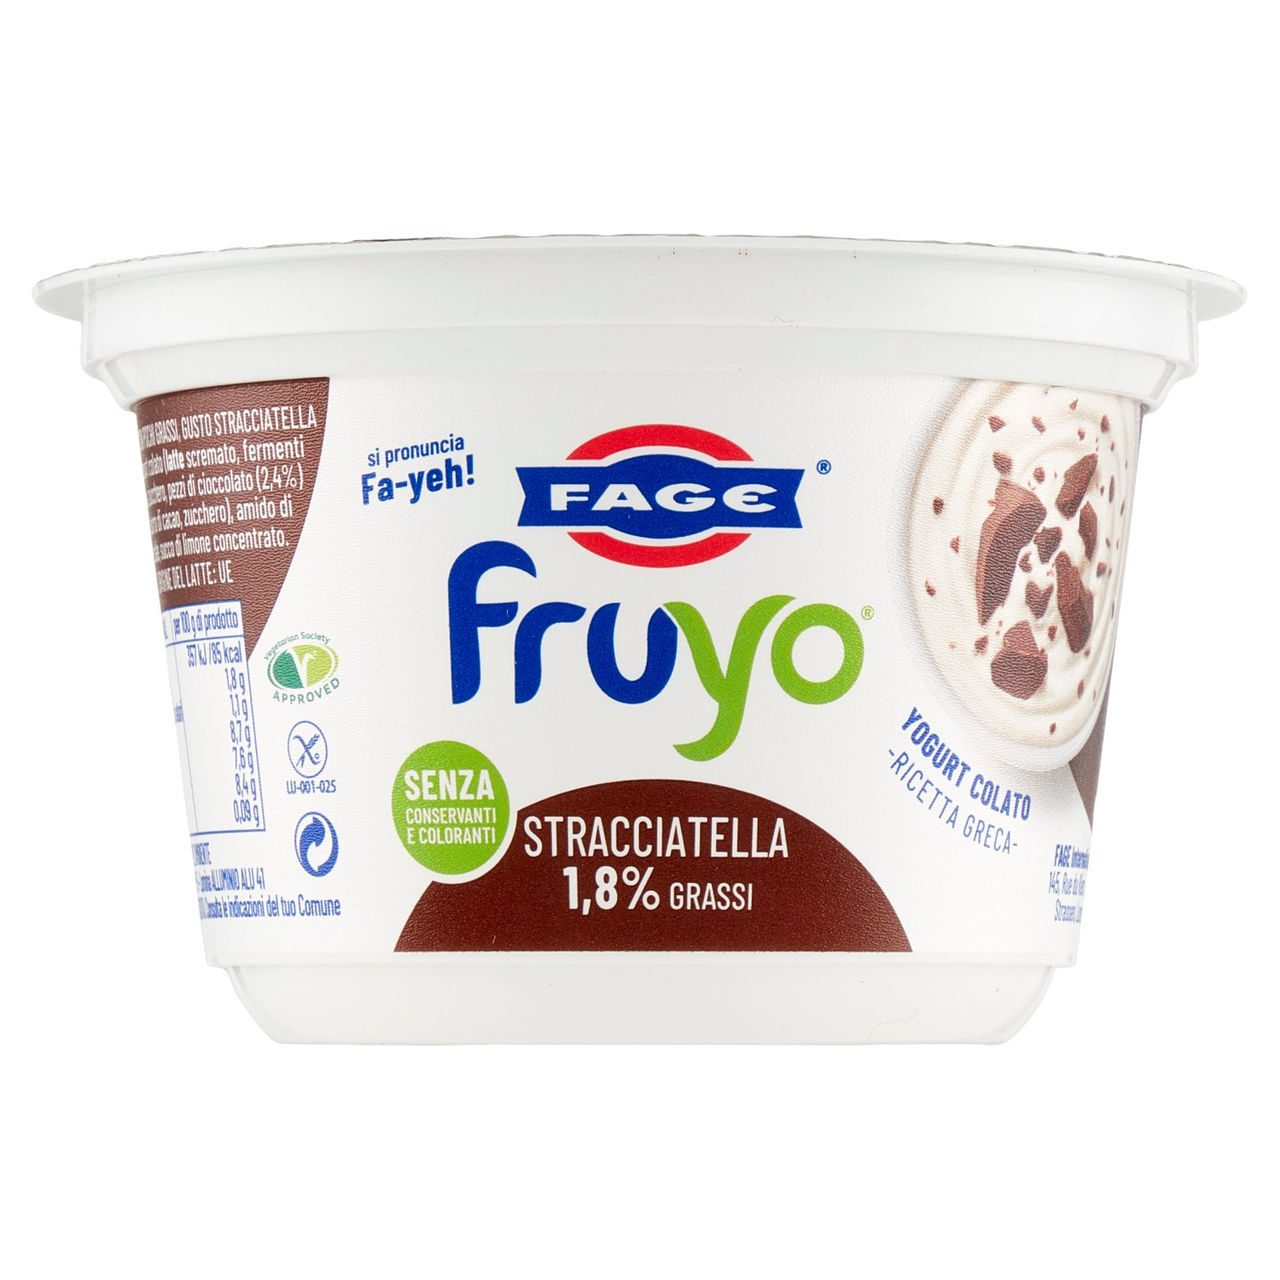 Fage fruyo Stracciatella 1,8% Grassi 150 g